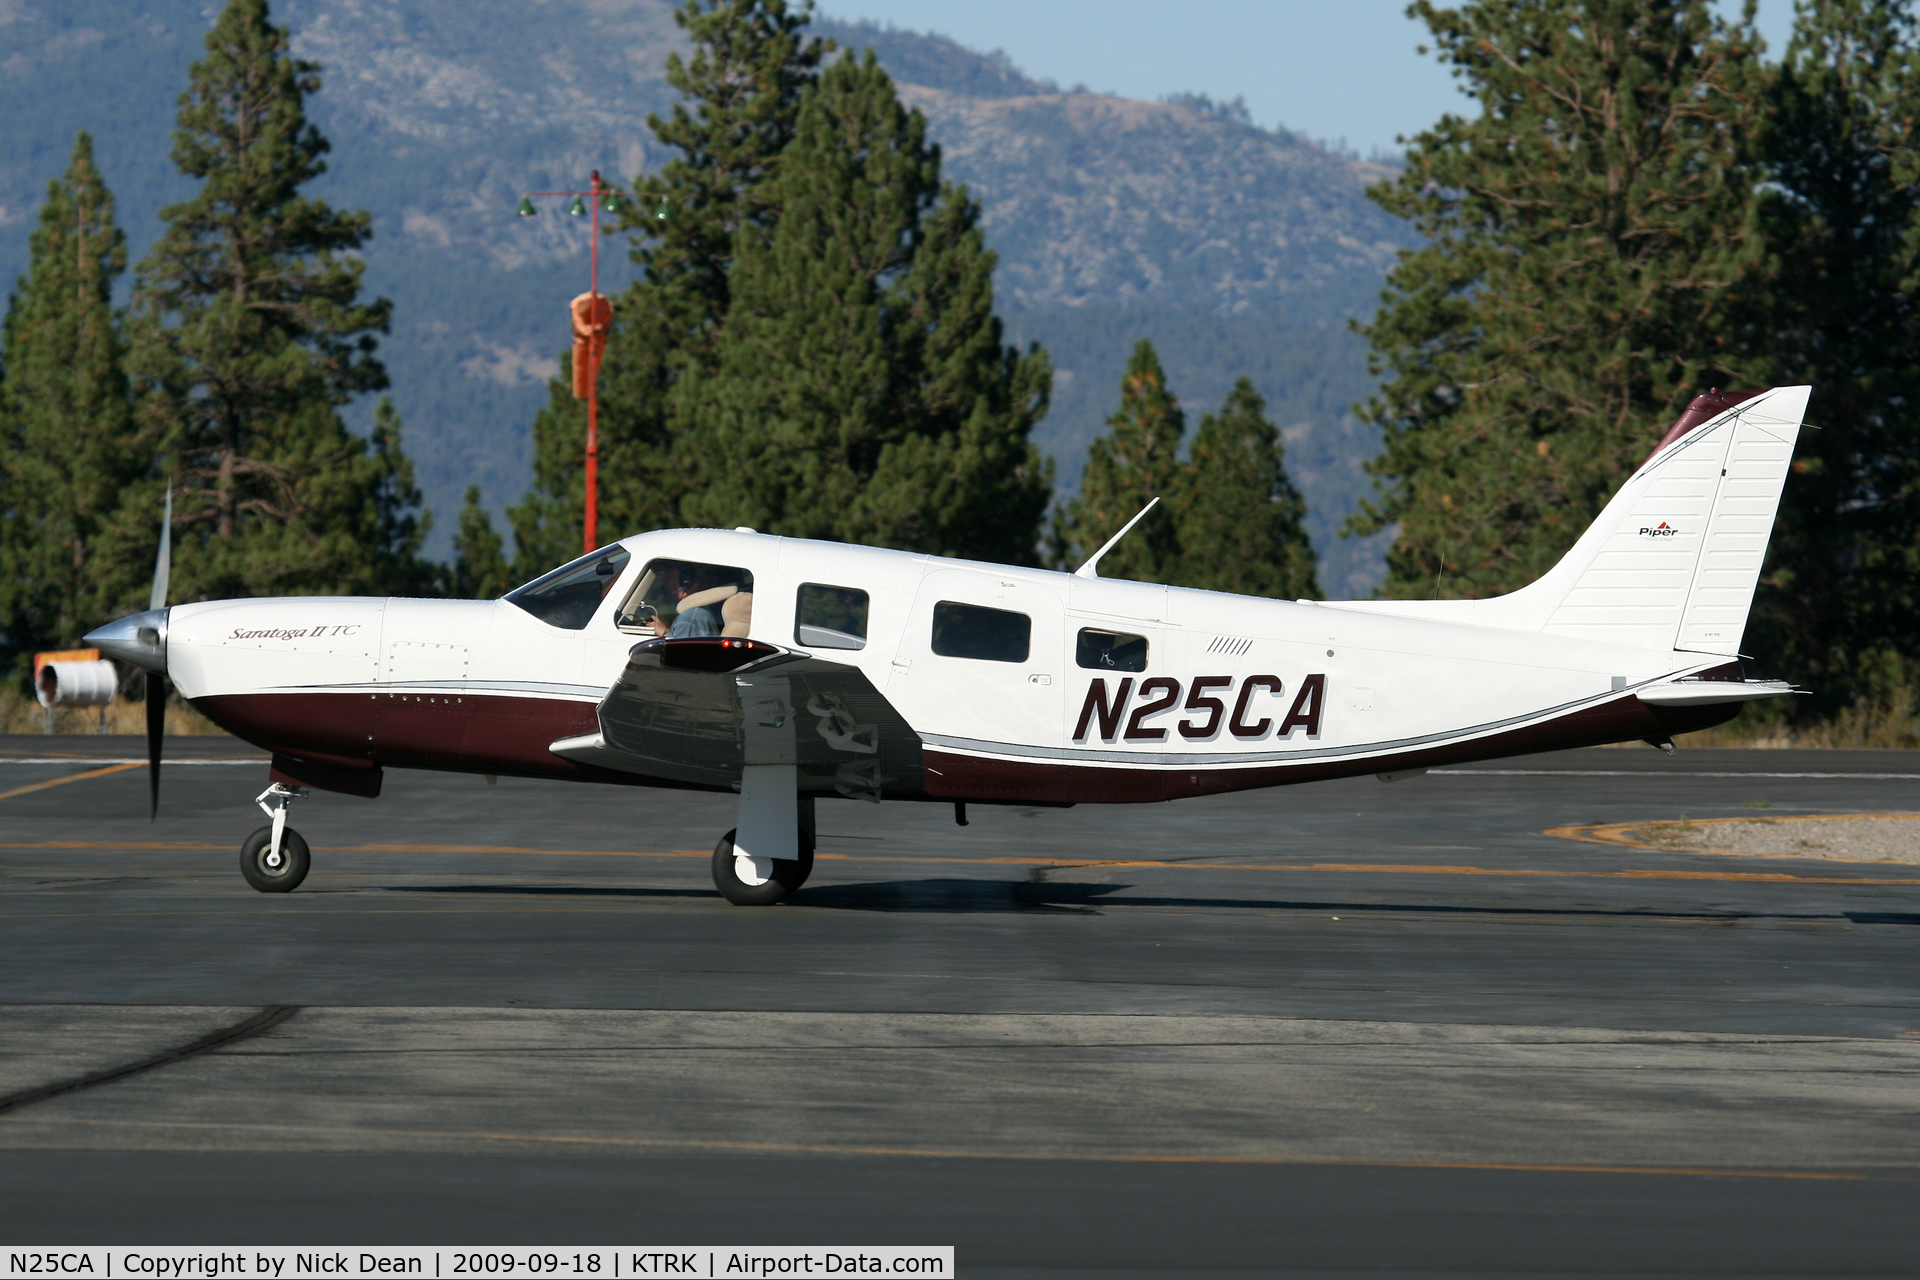 N25CA, 2006 Piper PA-32R-301T Turbo Saratoga C/N 3257424, KTRK